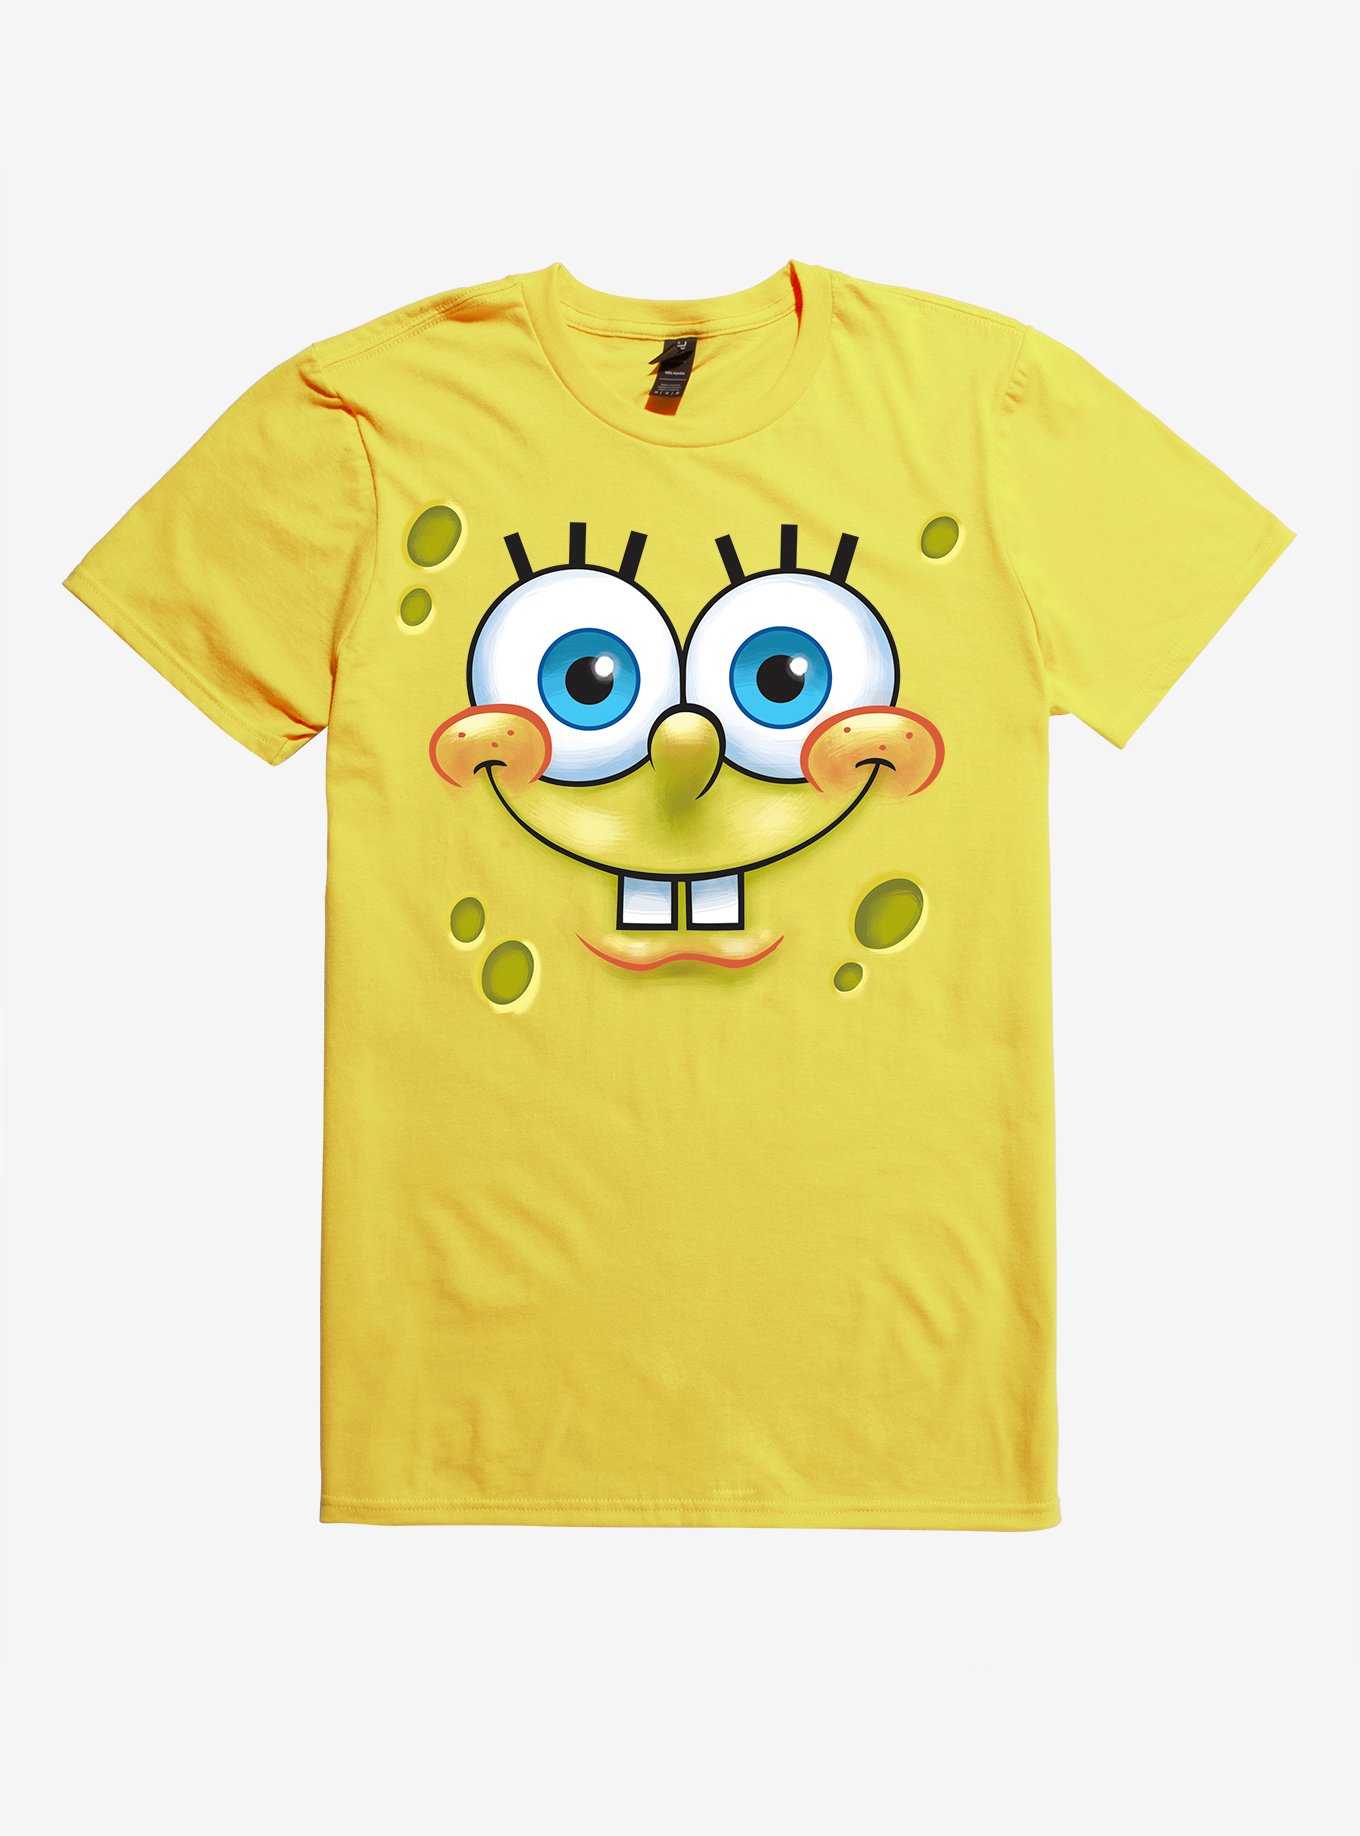 SpongeBob SquarePants SpongeBob Face T-Shirt, , hi-res